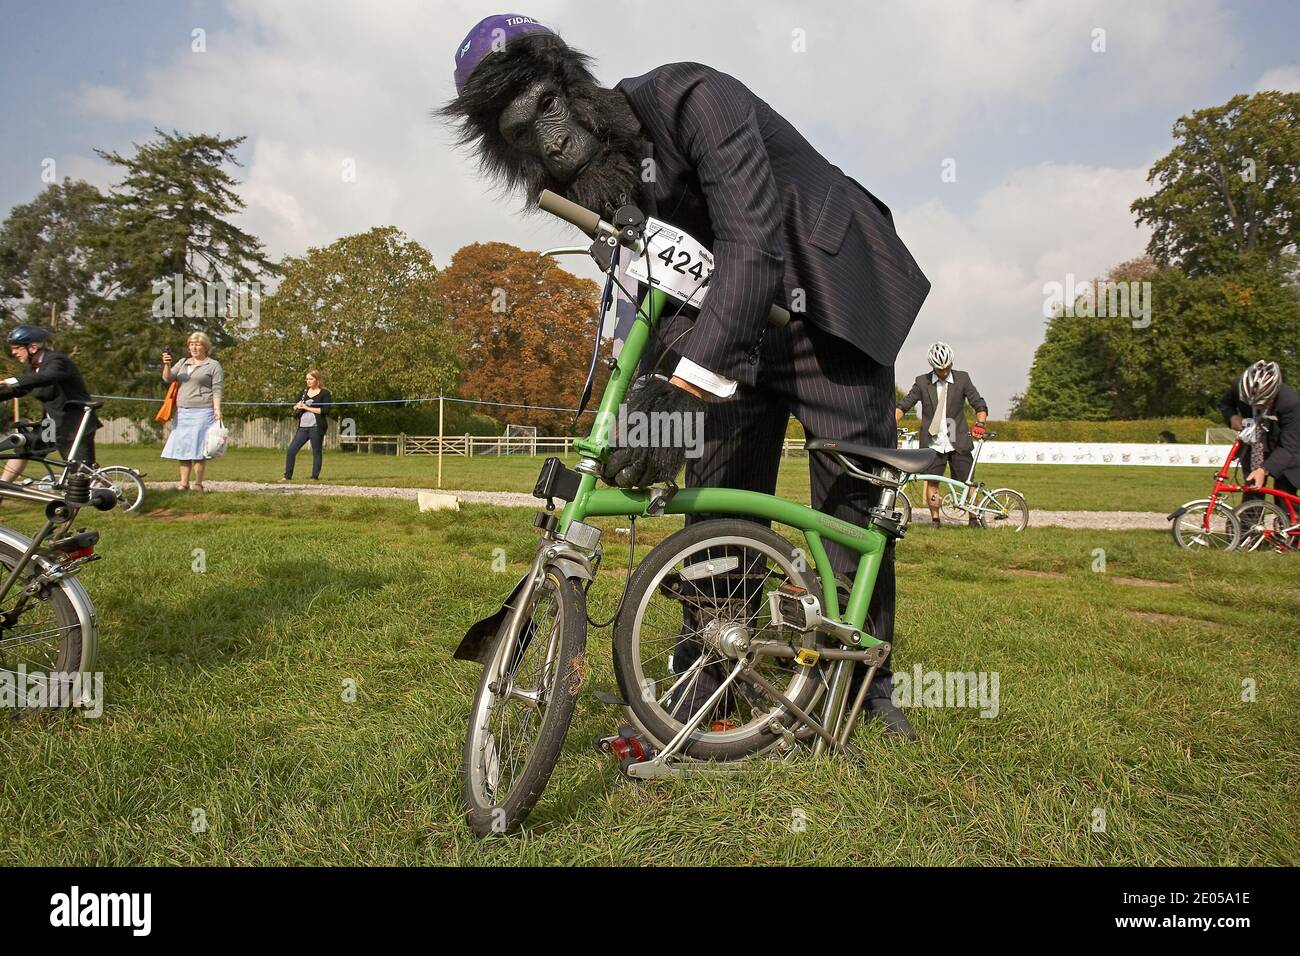 Participant portant un costume de singe poussant sa bicyclette pliante Brompton aux Championnats du monde de Brompton, qui se tiennent au Palais de Blenheim, Royaume-Uni . Banque D'Images